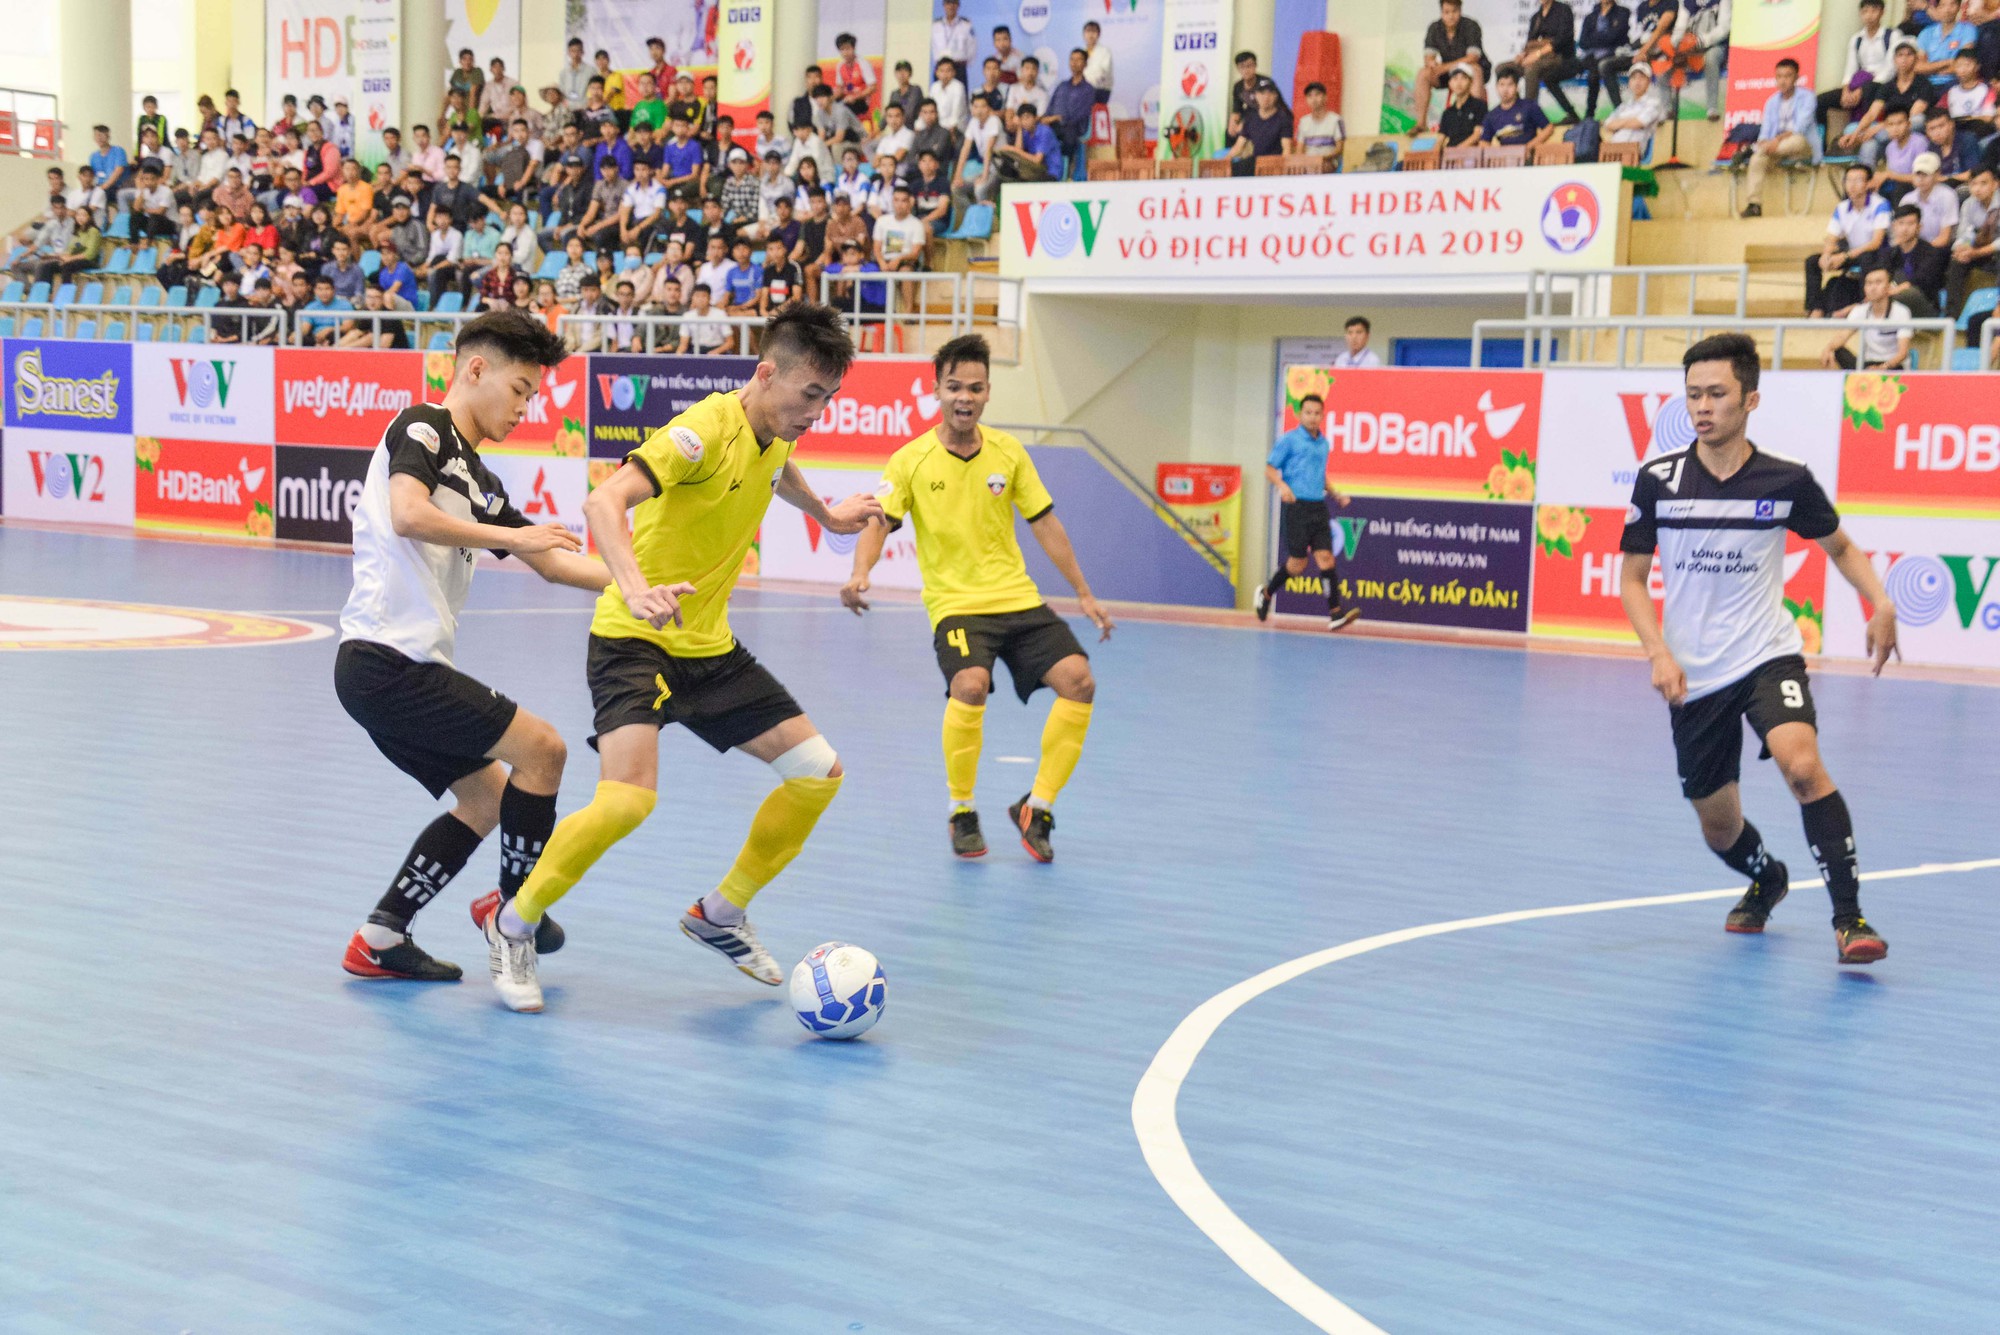 Tập nhận bóng - Đỡ bóng trong bóng đá Futsal cơ bản